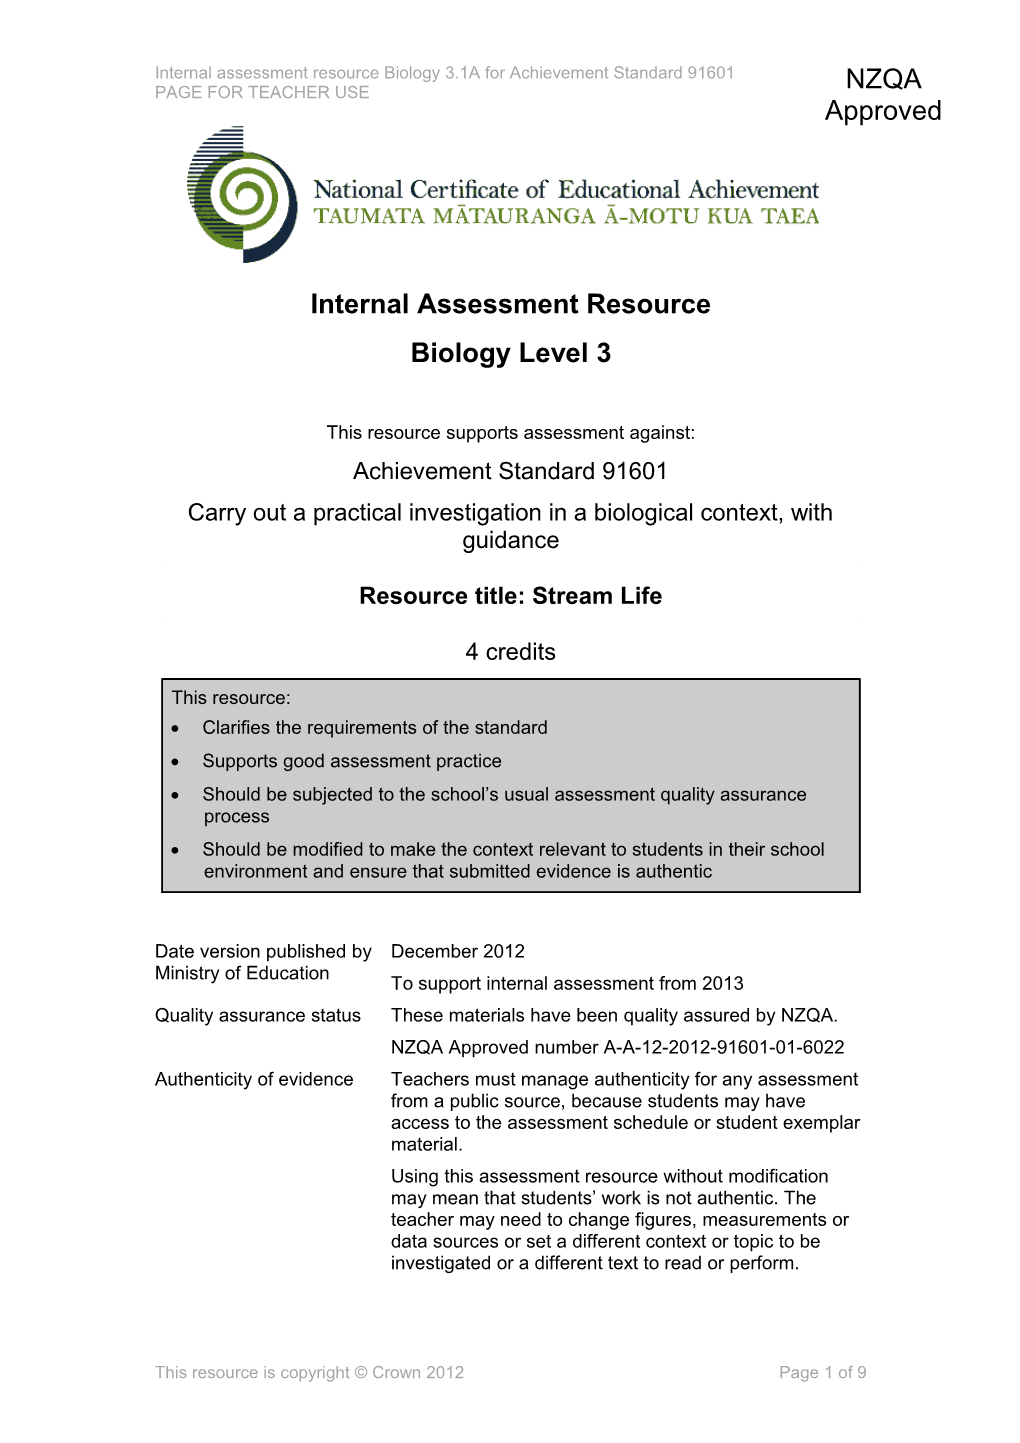 Level 3 Biology Internal Assessment Resource